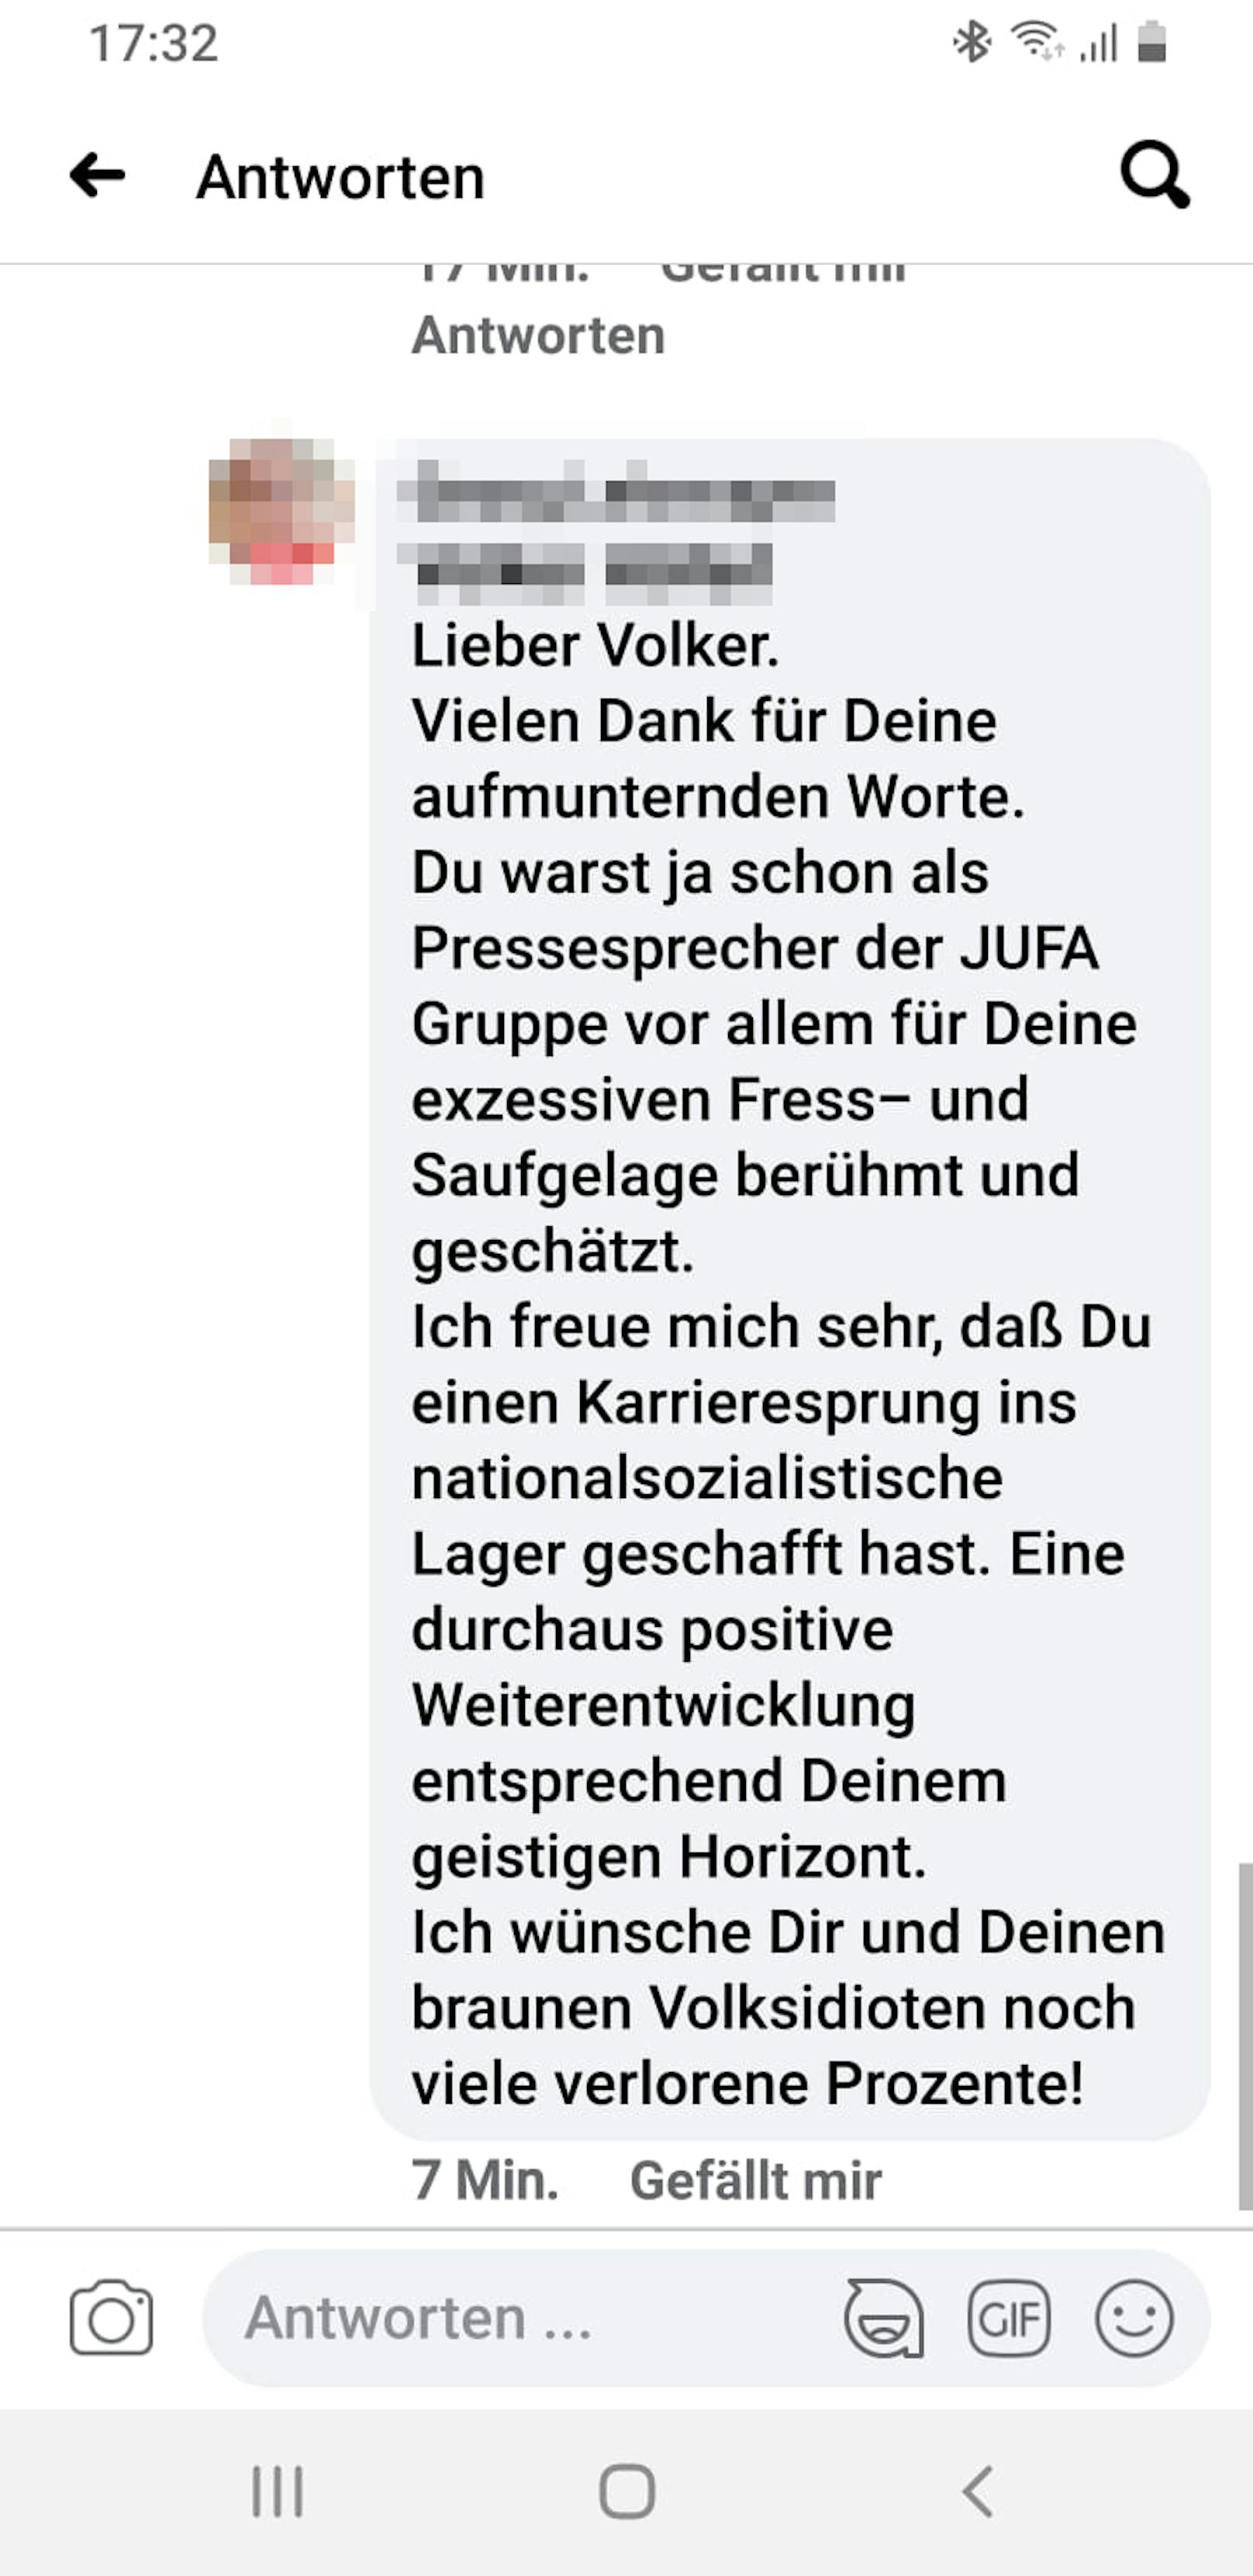 Die Original-Antwort des KPÖ-Taxlers an den FP-Pressemann